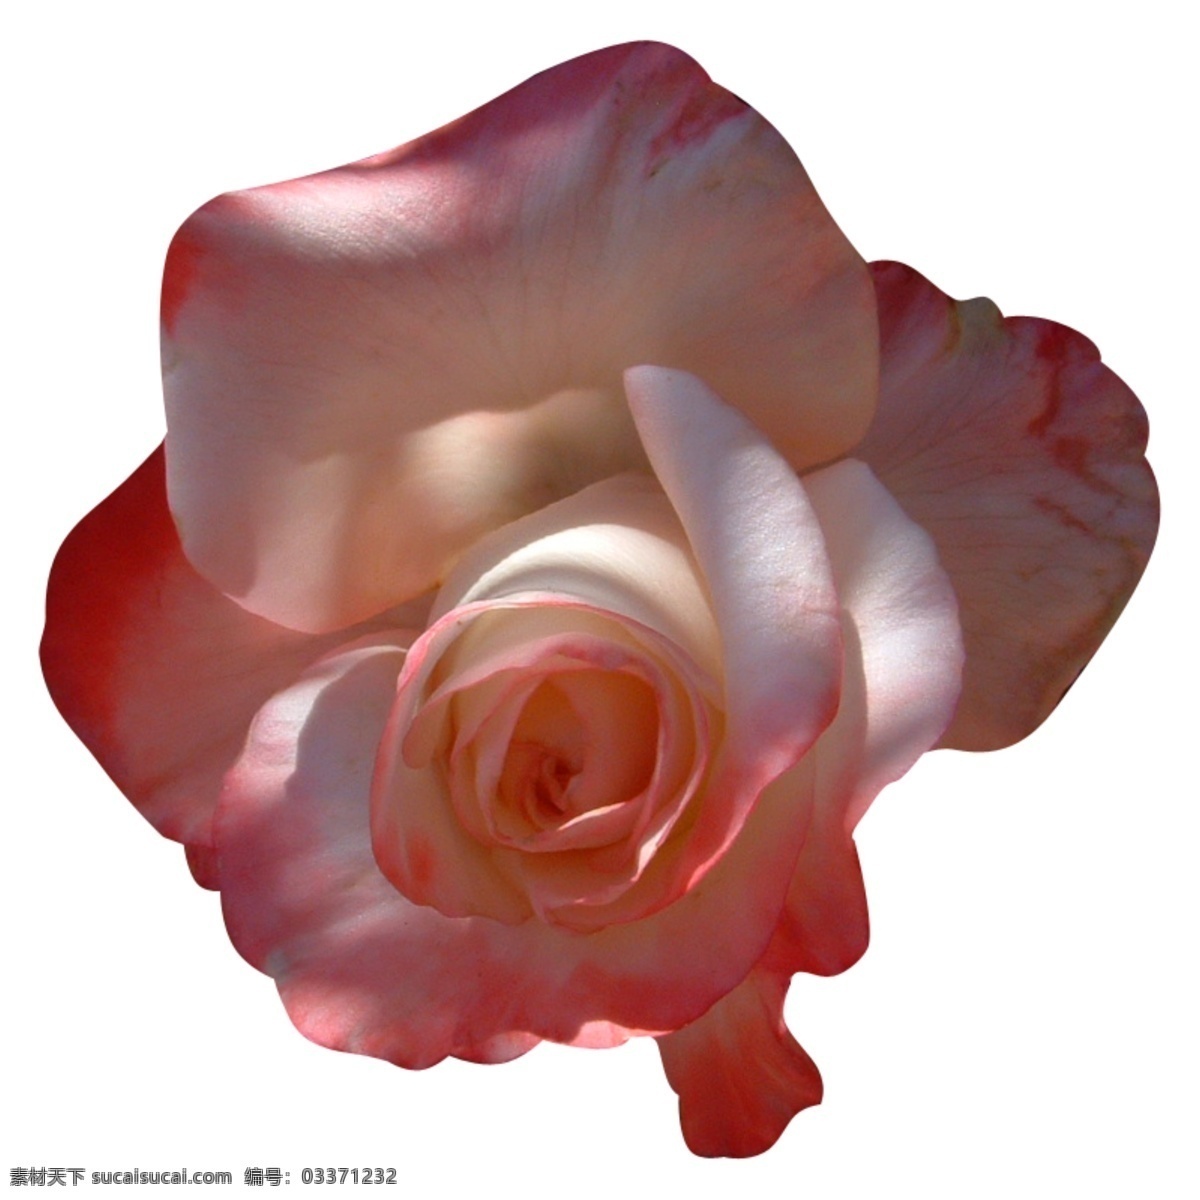 鲜红 玫瑰花 朵 笔刷 玫瑰花笔刷 花朵笔刷 鲜花笔刷 红色